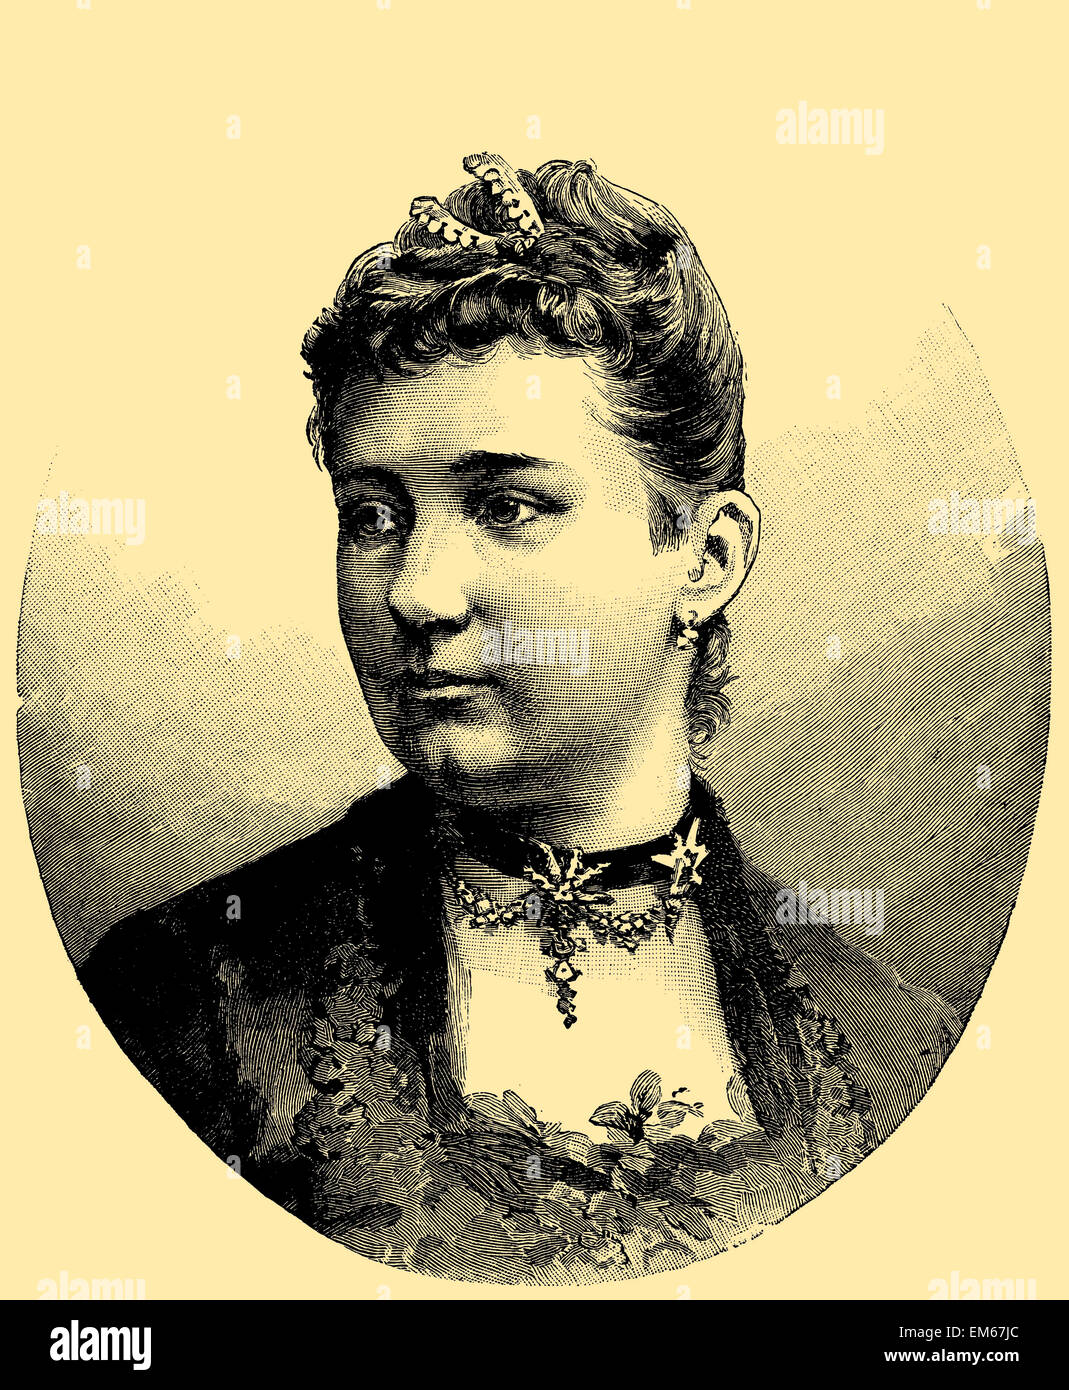 Augusta Victoria de Schleswig-Holstein (1858 - 1921), la dernière impératrice allemande et Reine de Prusse Banque D'Images